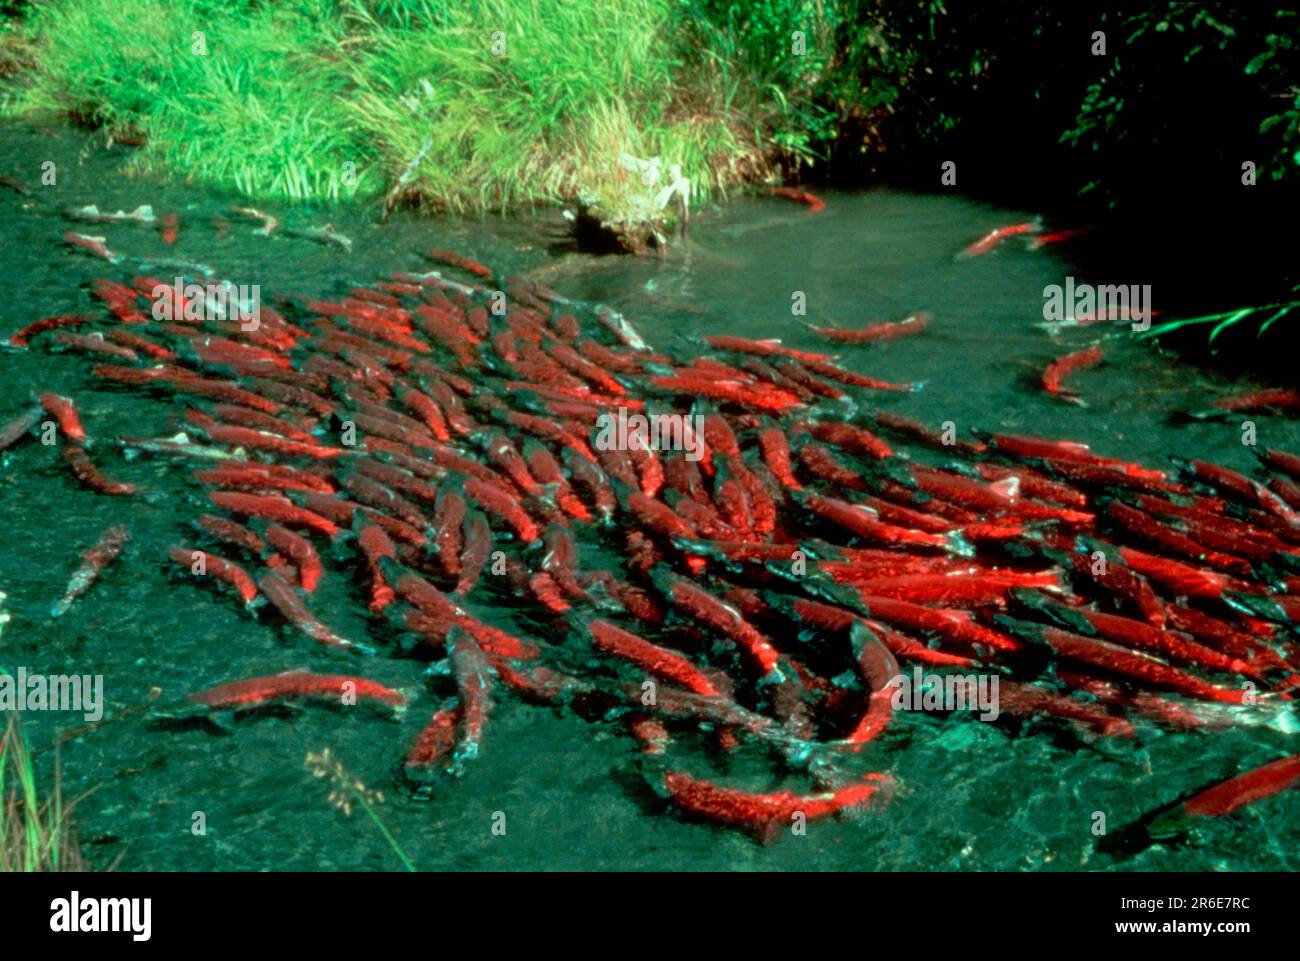 Migrating Salmons, Alaska, USA (Oncorhynchus) Stock Photo